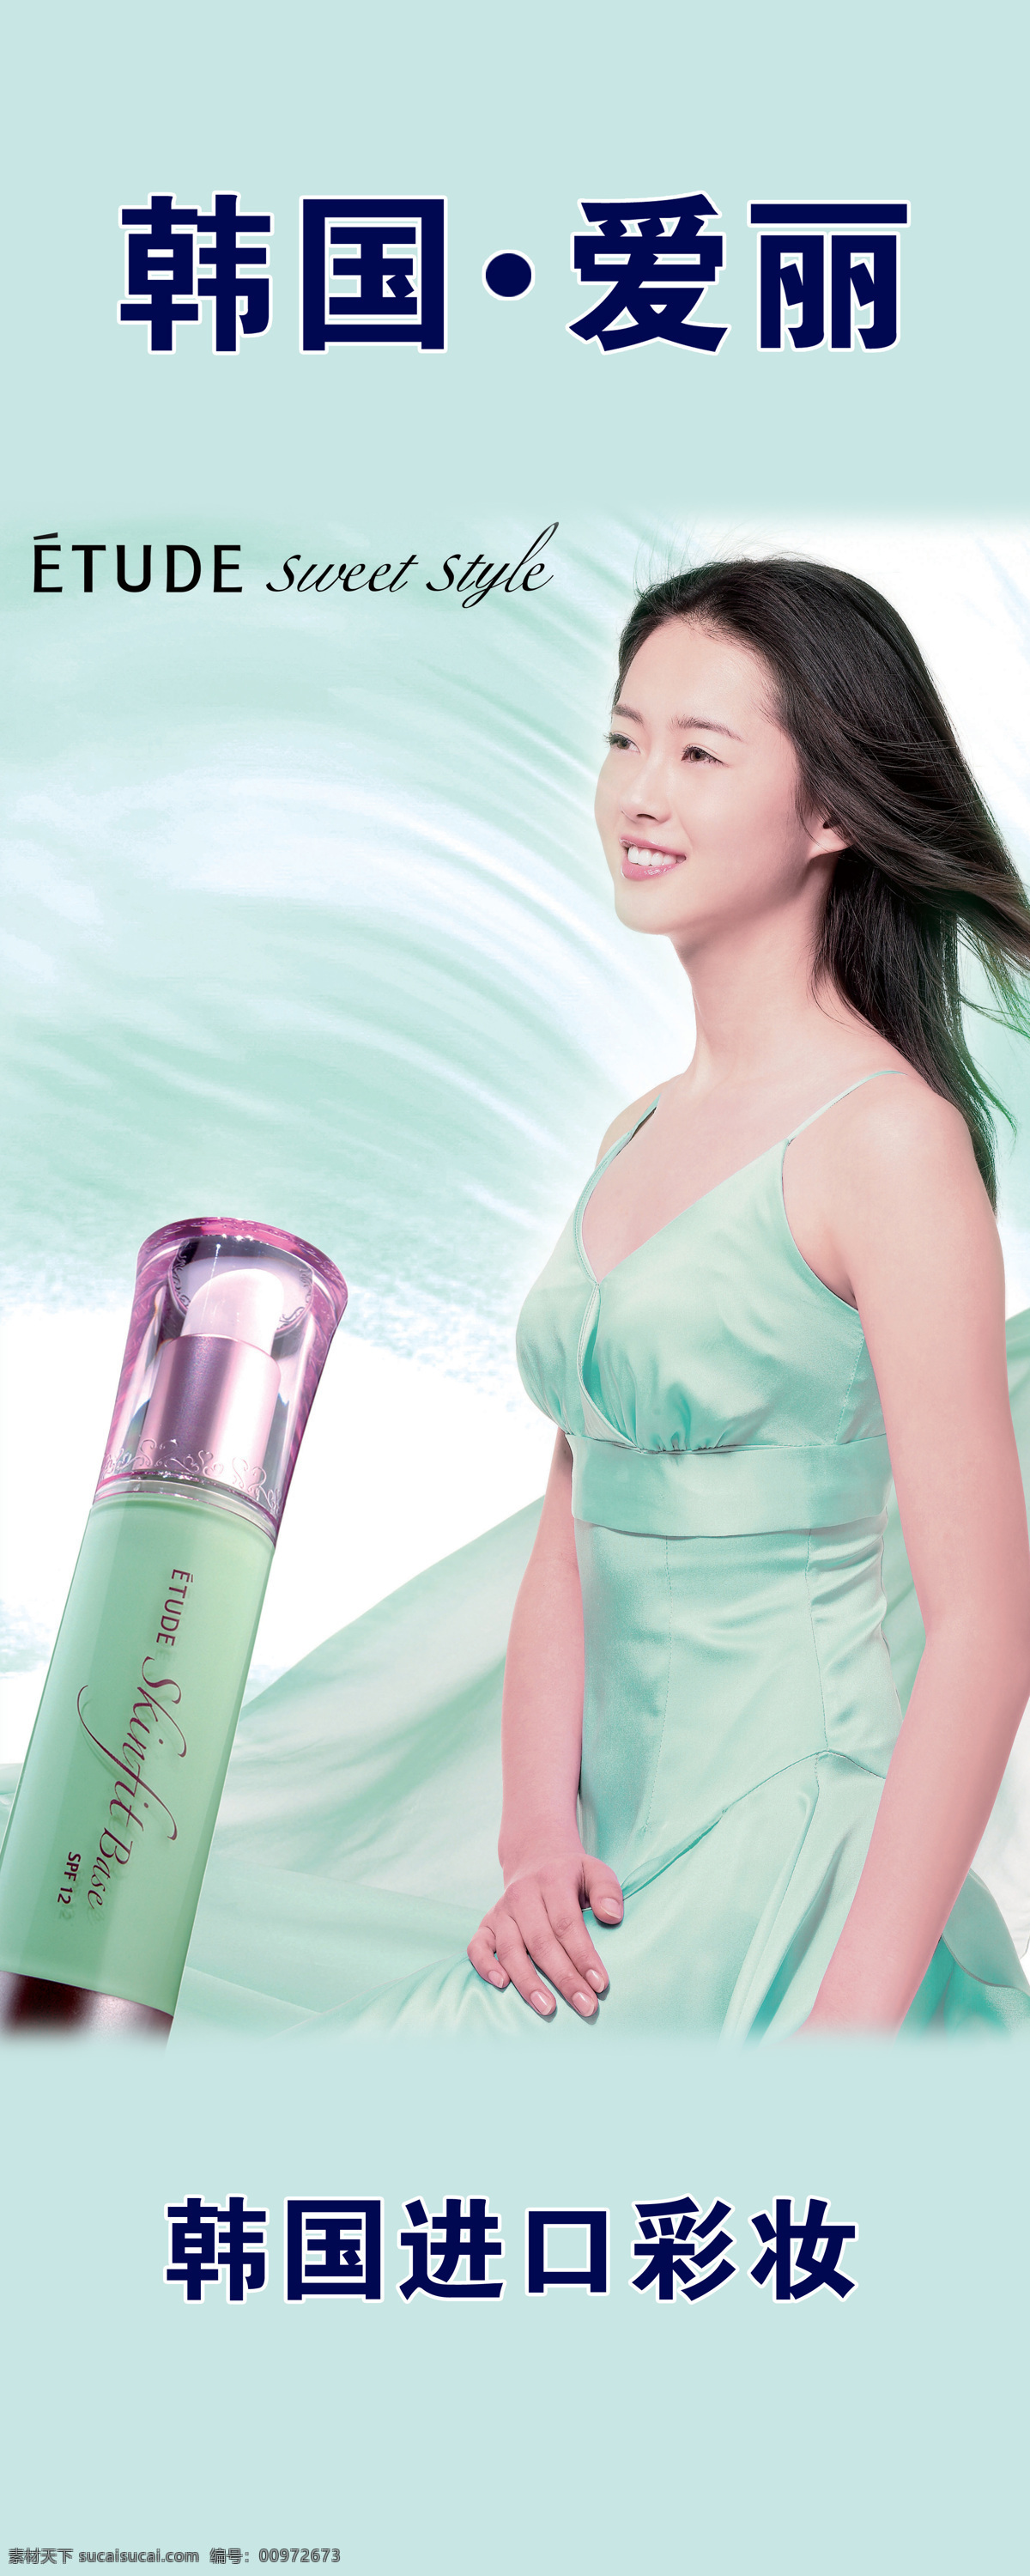 韩国爱丽 化妆品 青春靓丽少女 清纯美女 人物图库 女性女人 摄影图库 招贴设计